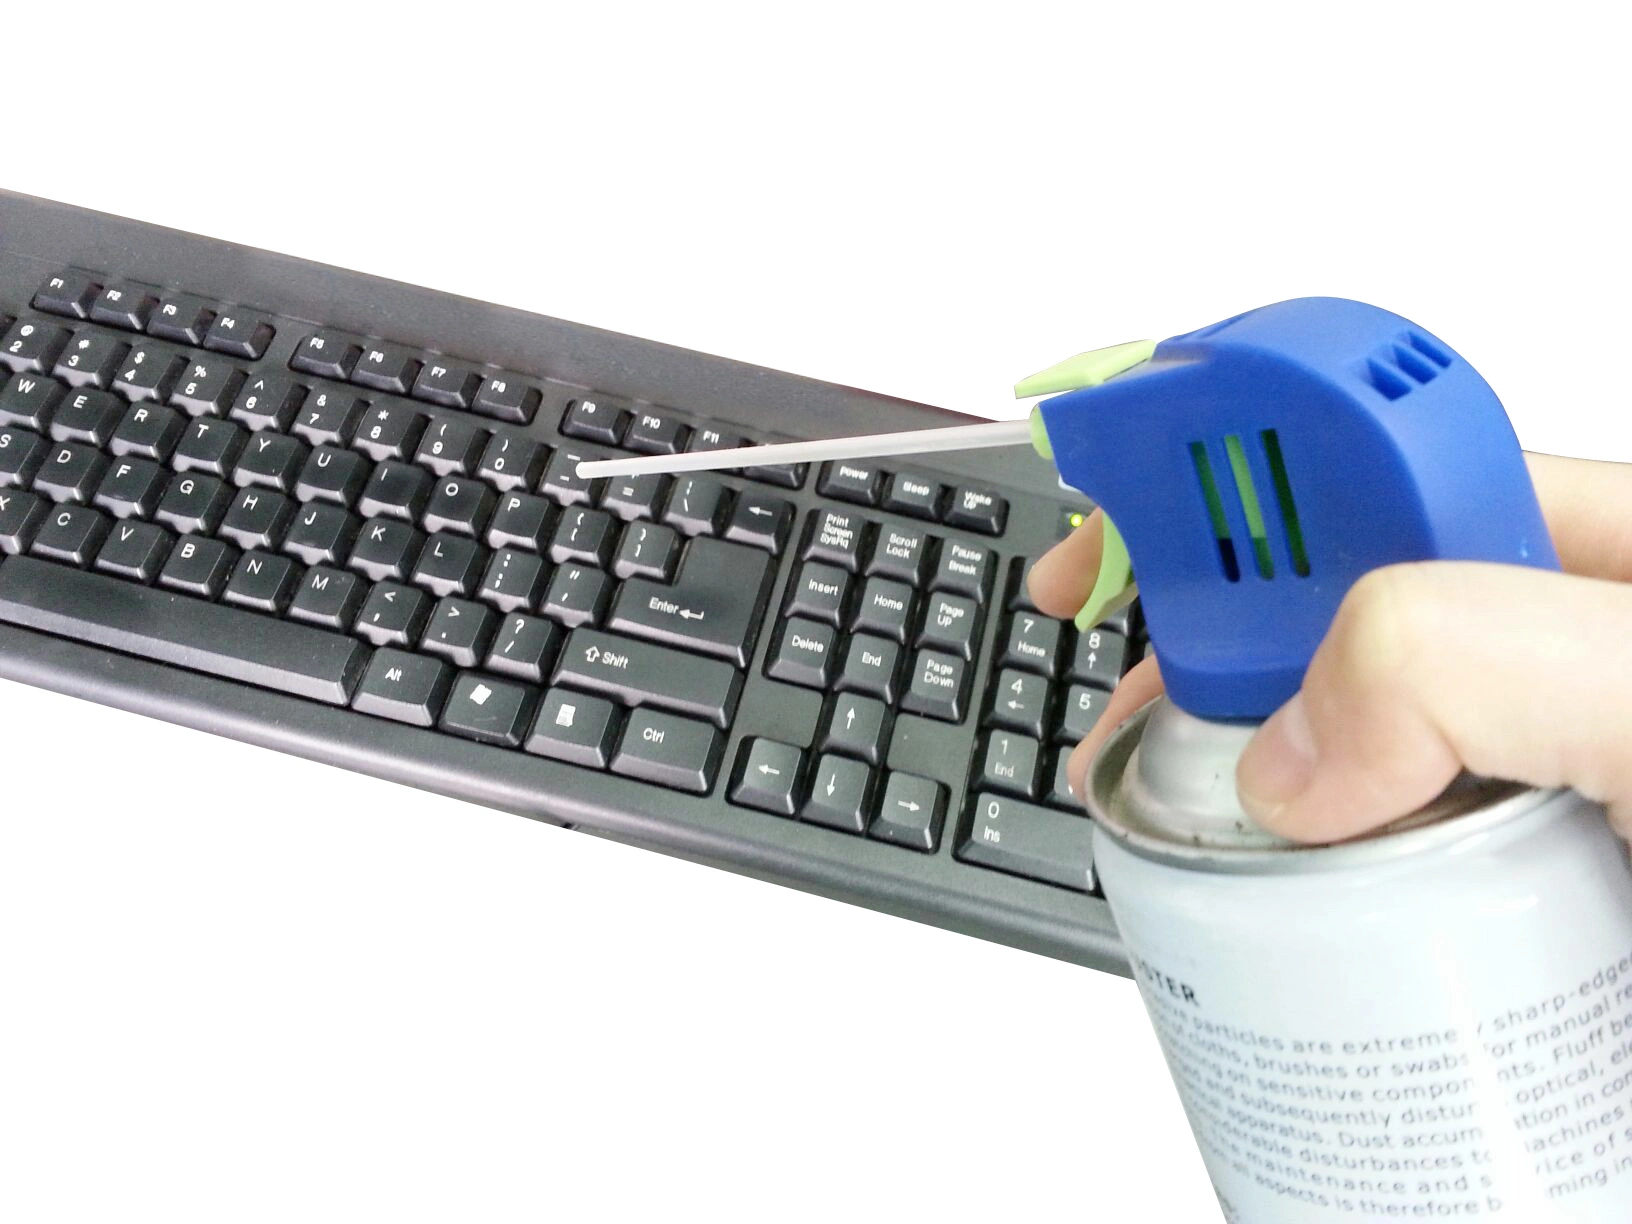 compressed air keyboard cleaner